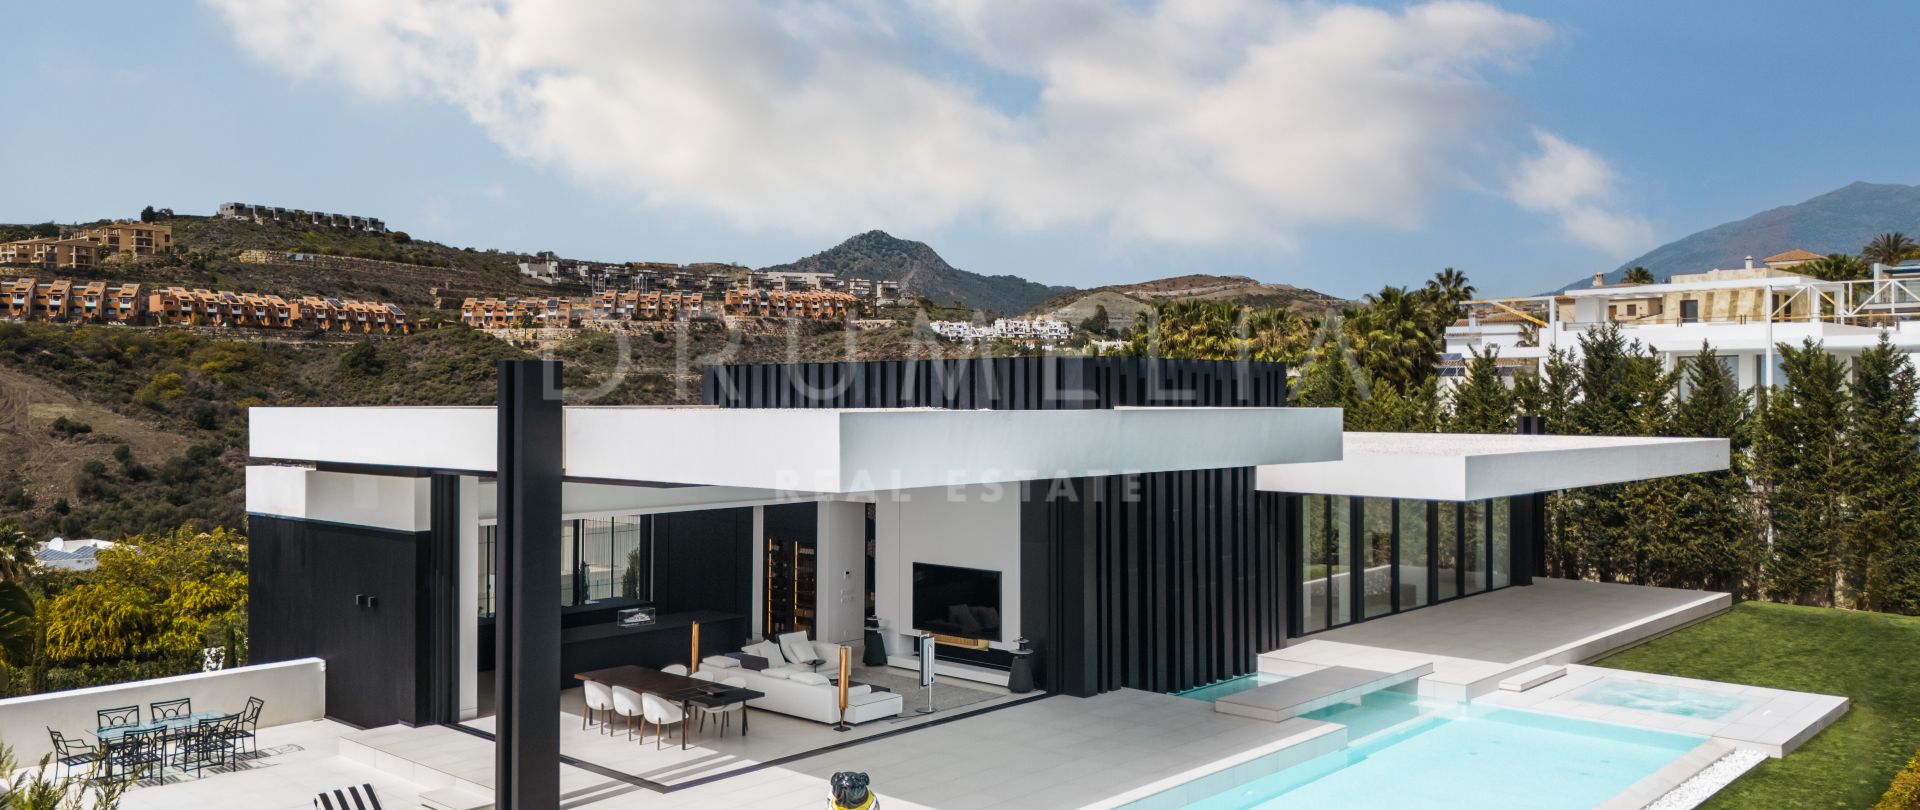 Villa Nebbia - Prachtige luxe moderne villa met panoramisch uitzicht in Reserva del Higuerón, Benalmadena